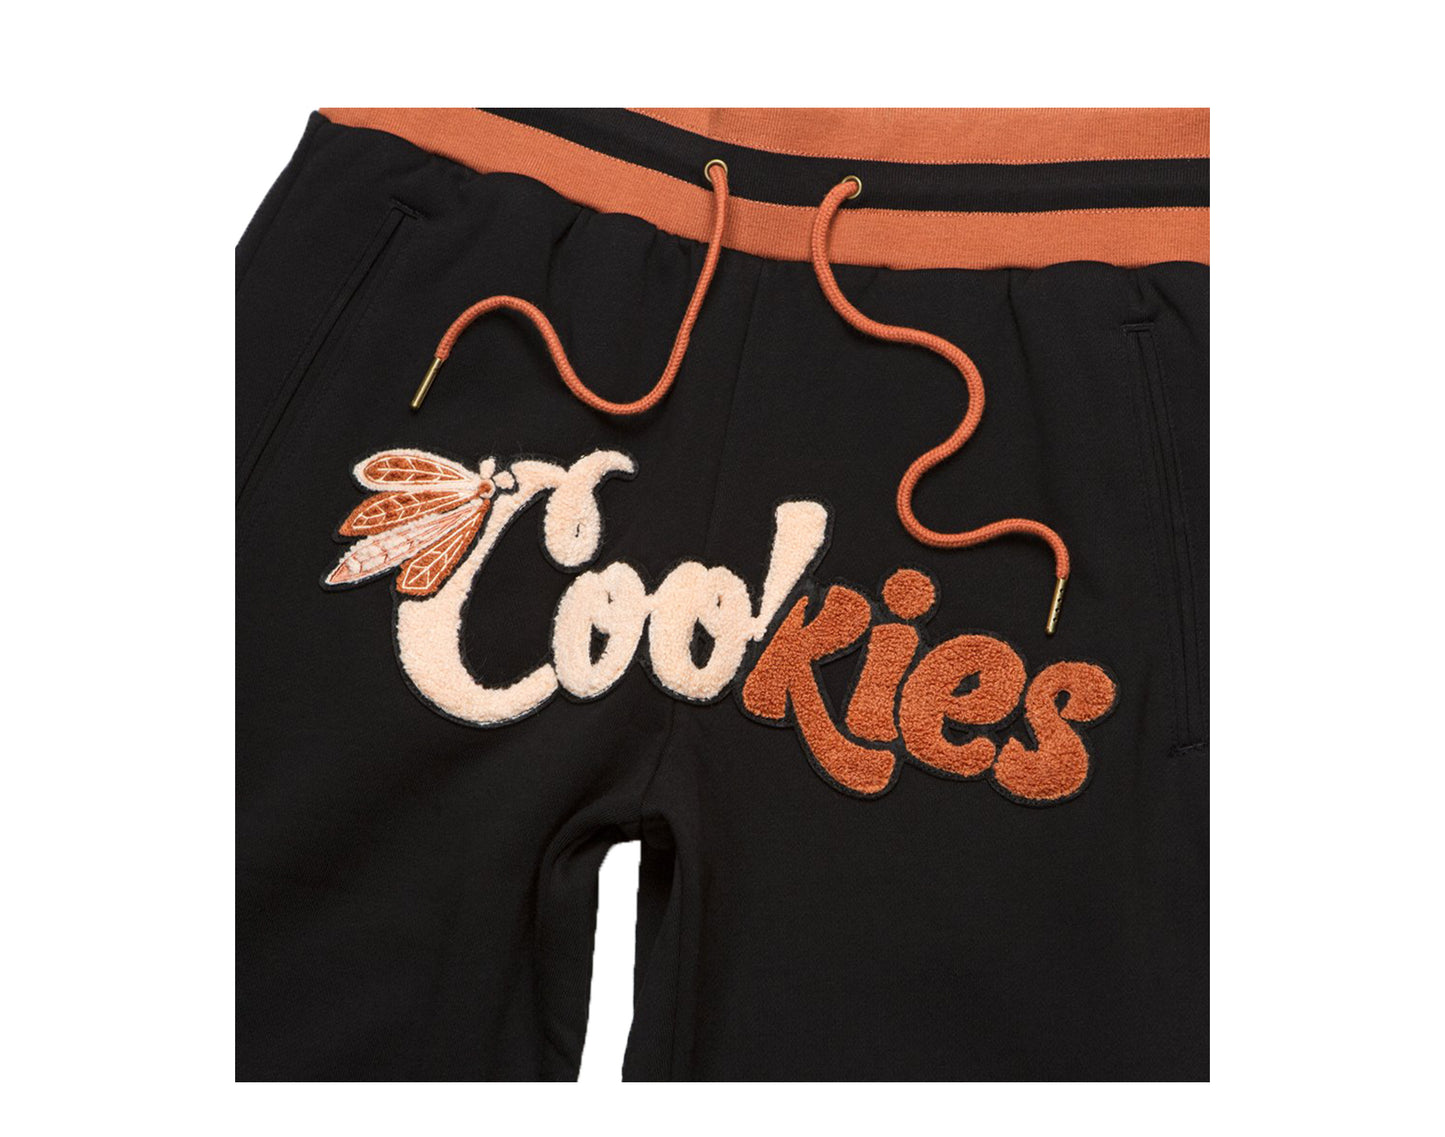 Cookies Top Of The Key Fleece Joggers Black Men's Sweatpants 1546B4350-BLK